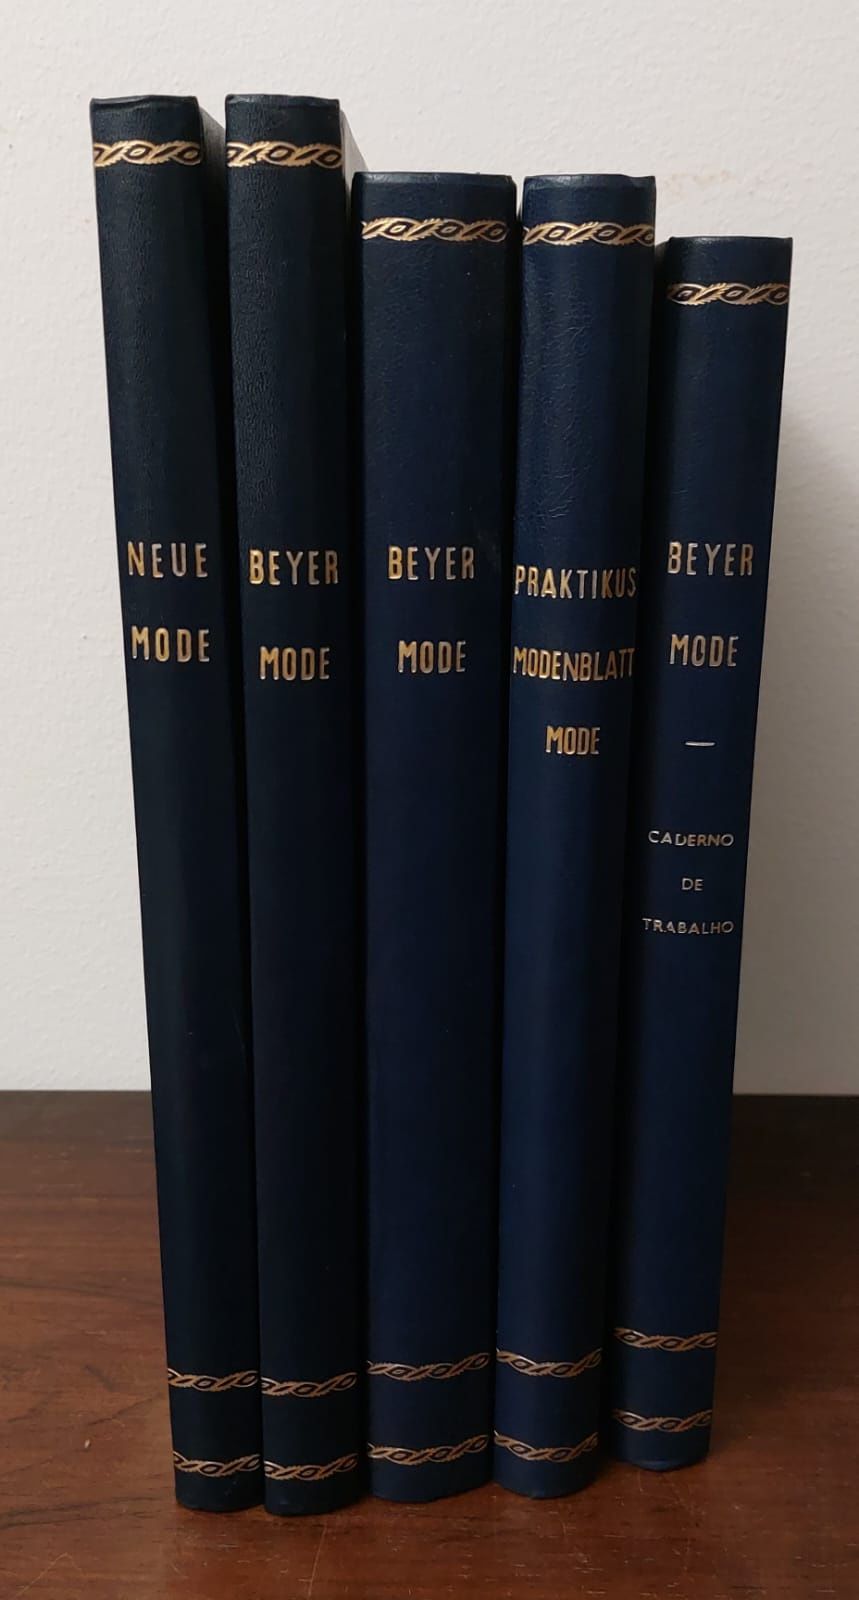 Revistas de Moda Vintage Alemã 5 volumes encadernados 1959